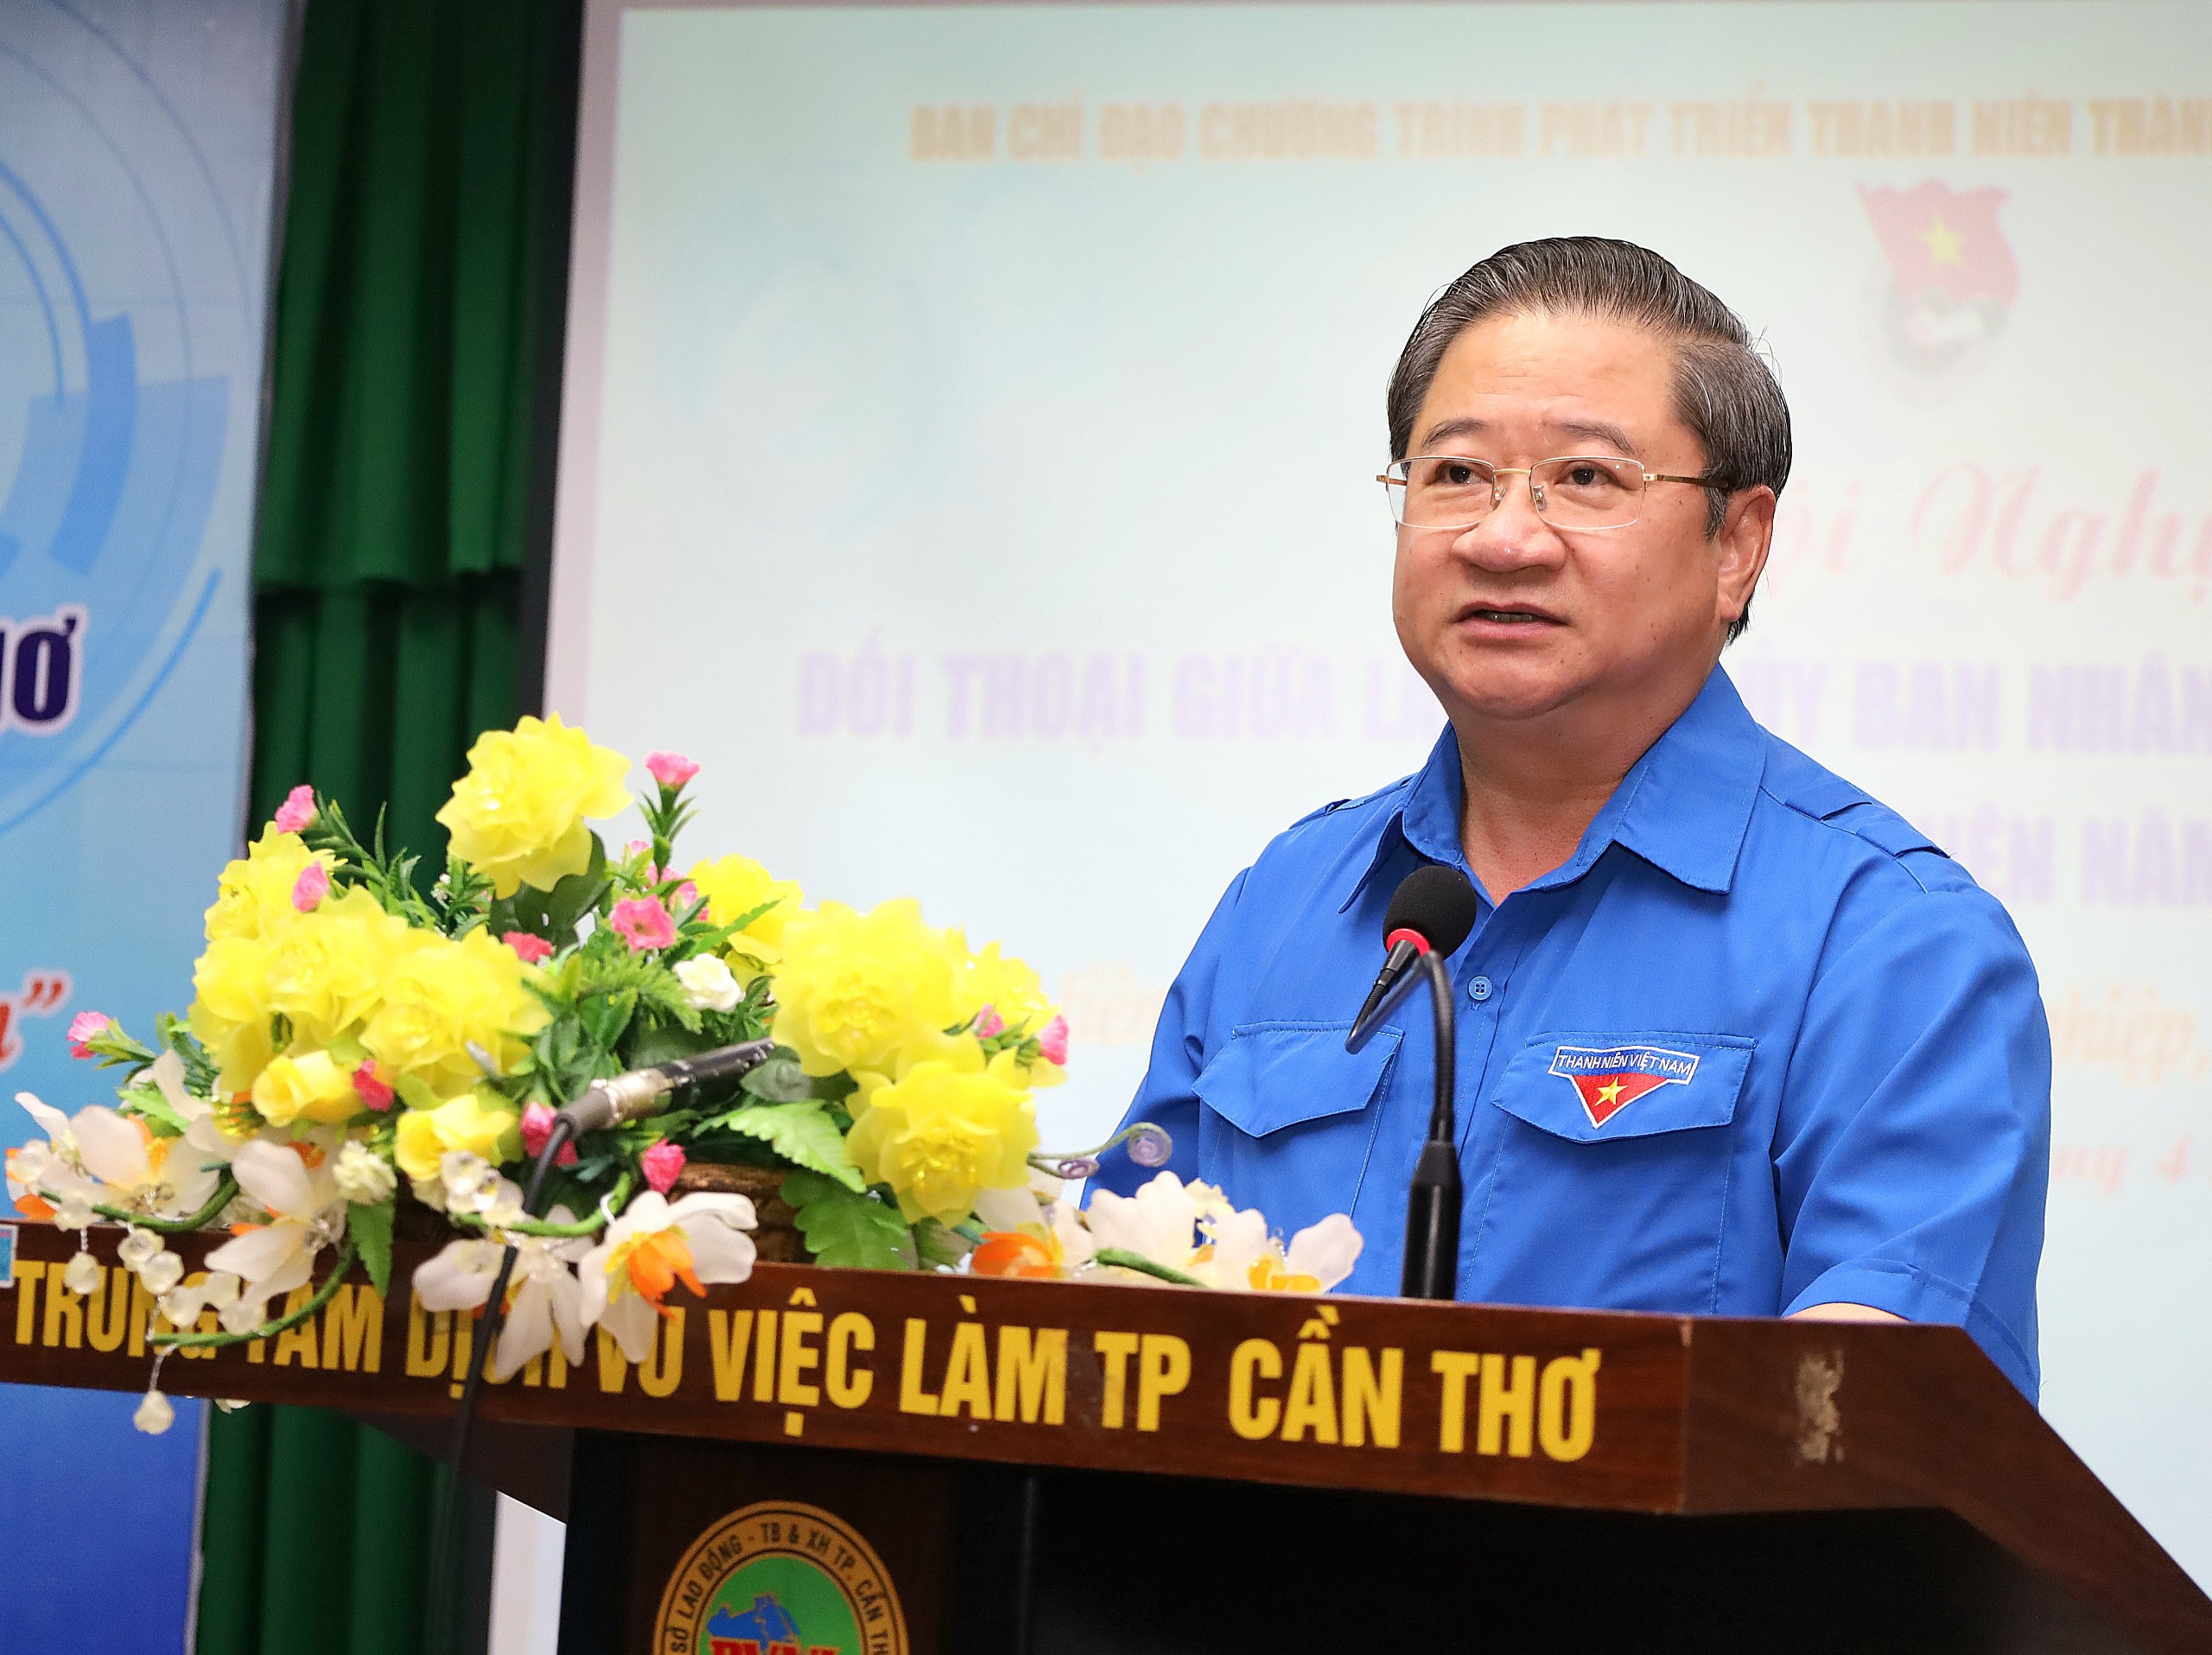 Ông Trần Việt Trường – Phó Bí thư Thành ủy, Chủ tịch UBND TP. Cần Thơ phát biểu khai mạc buổi đối thoại.